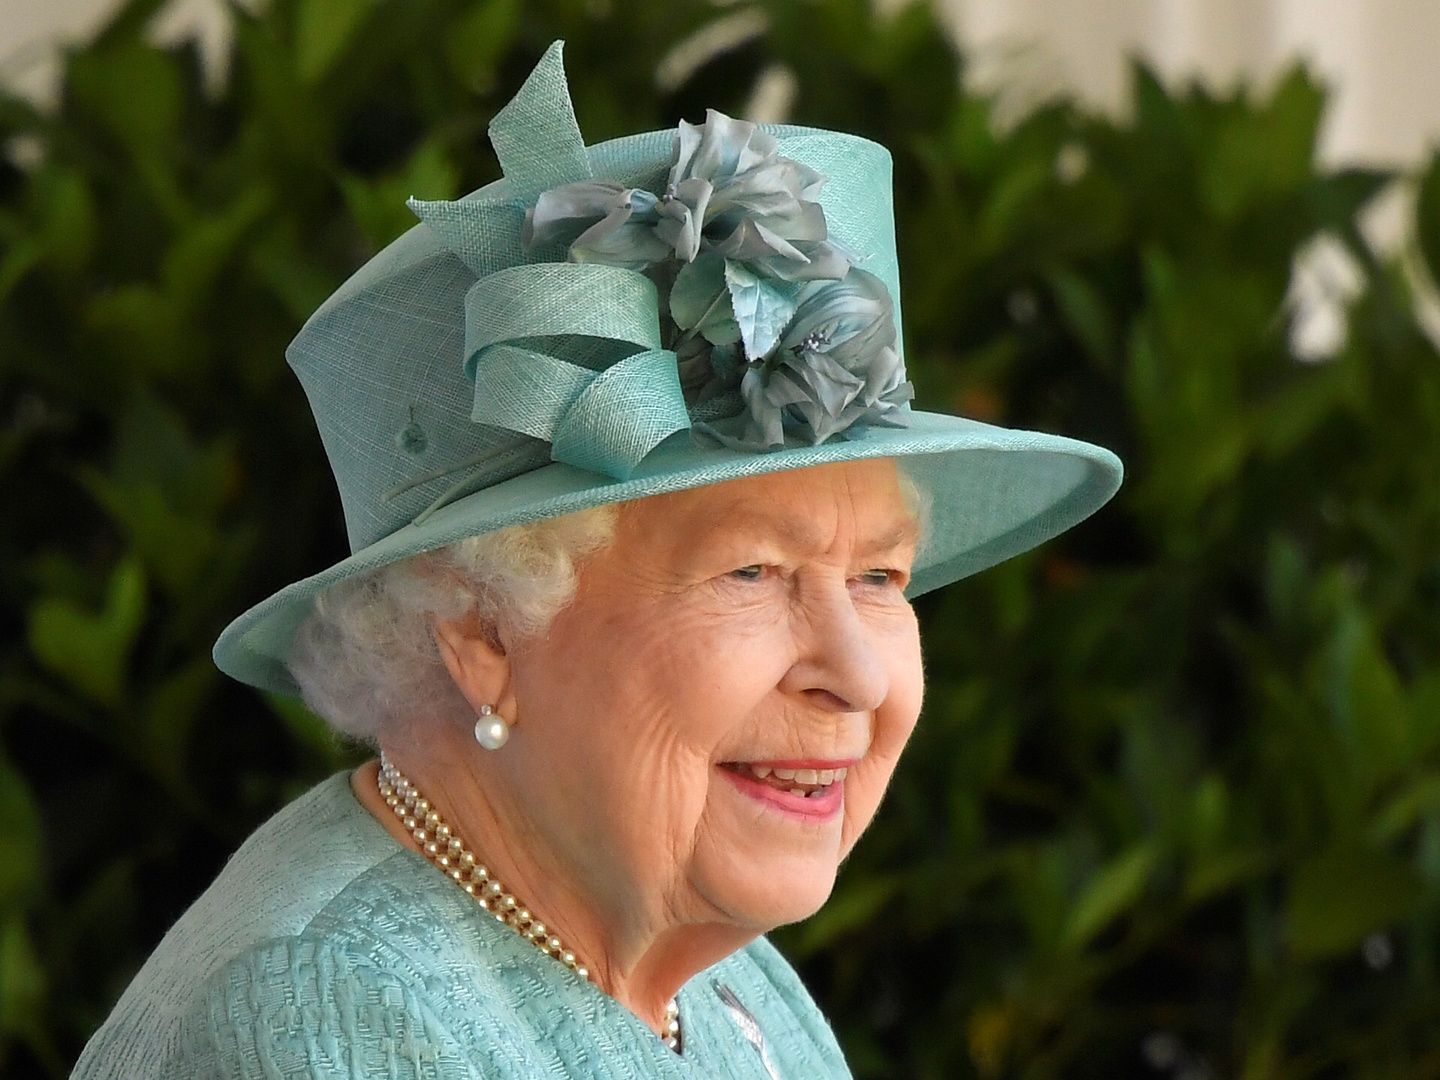 الكشف عن صافي ثروة الملكة إليزابيث